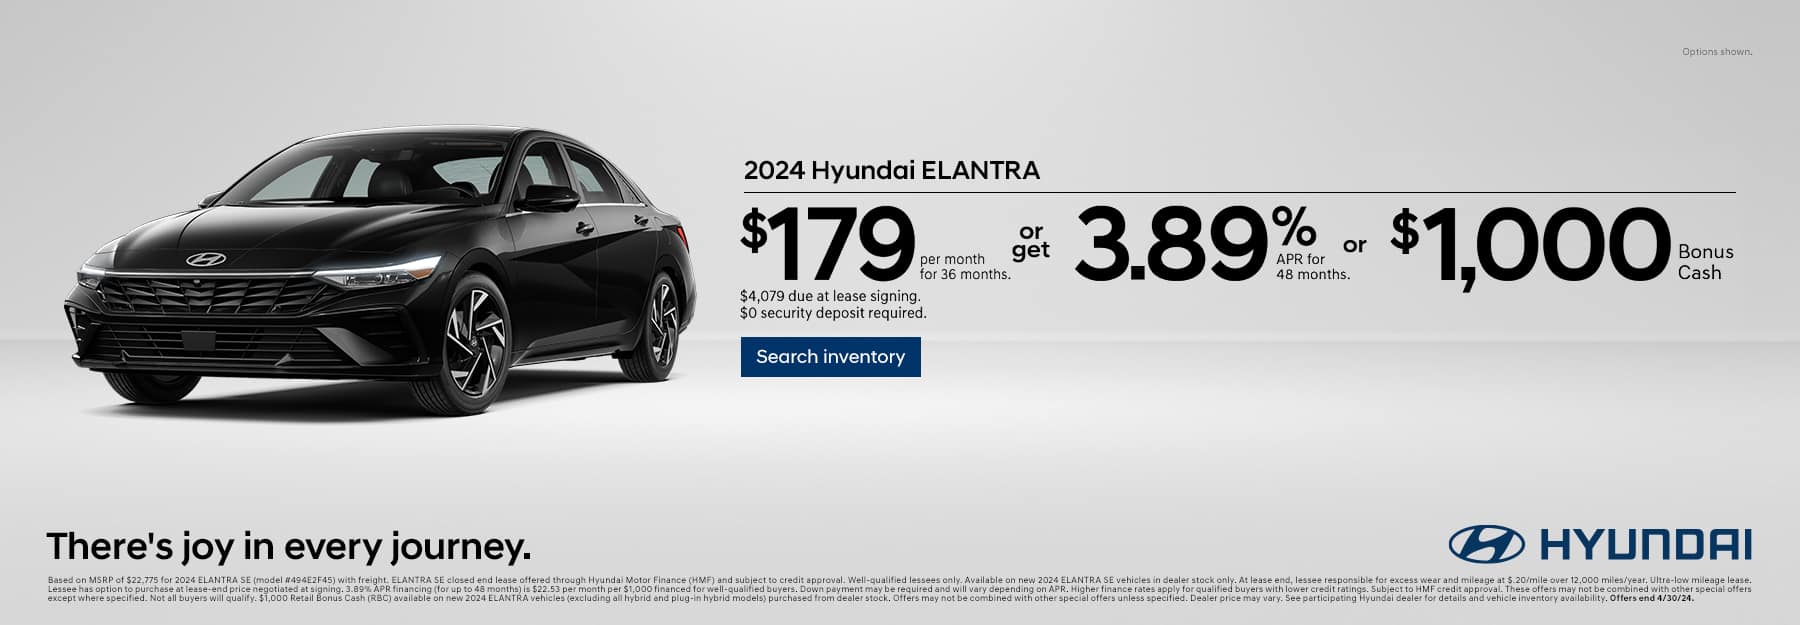 Hyundai Elantra-Miami